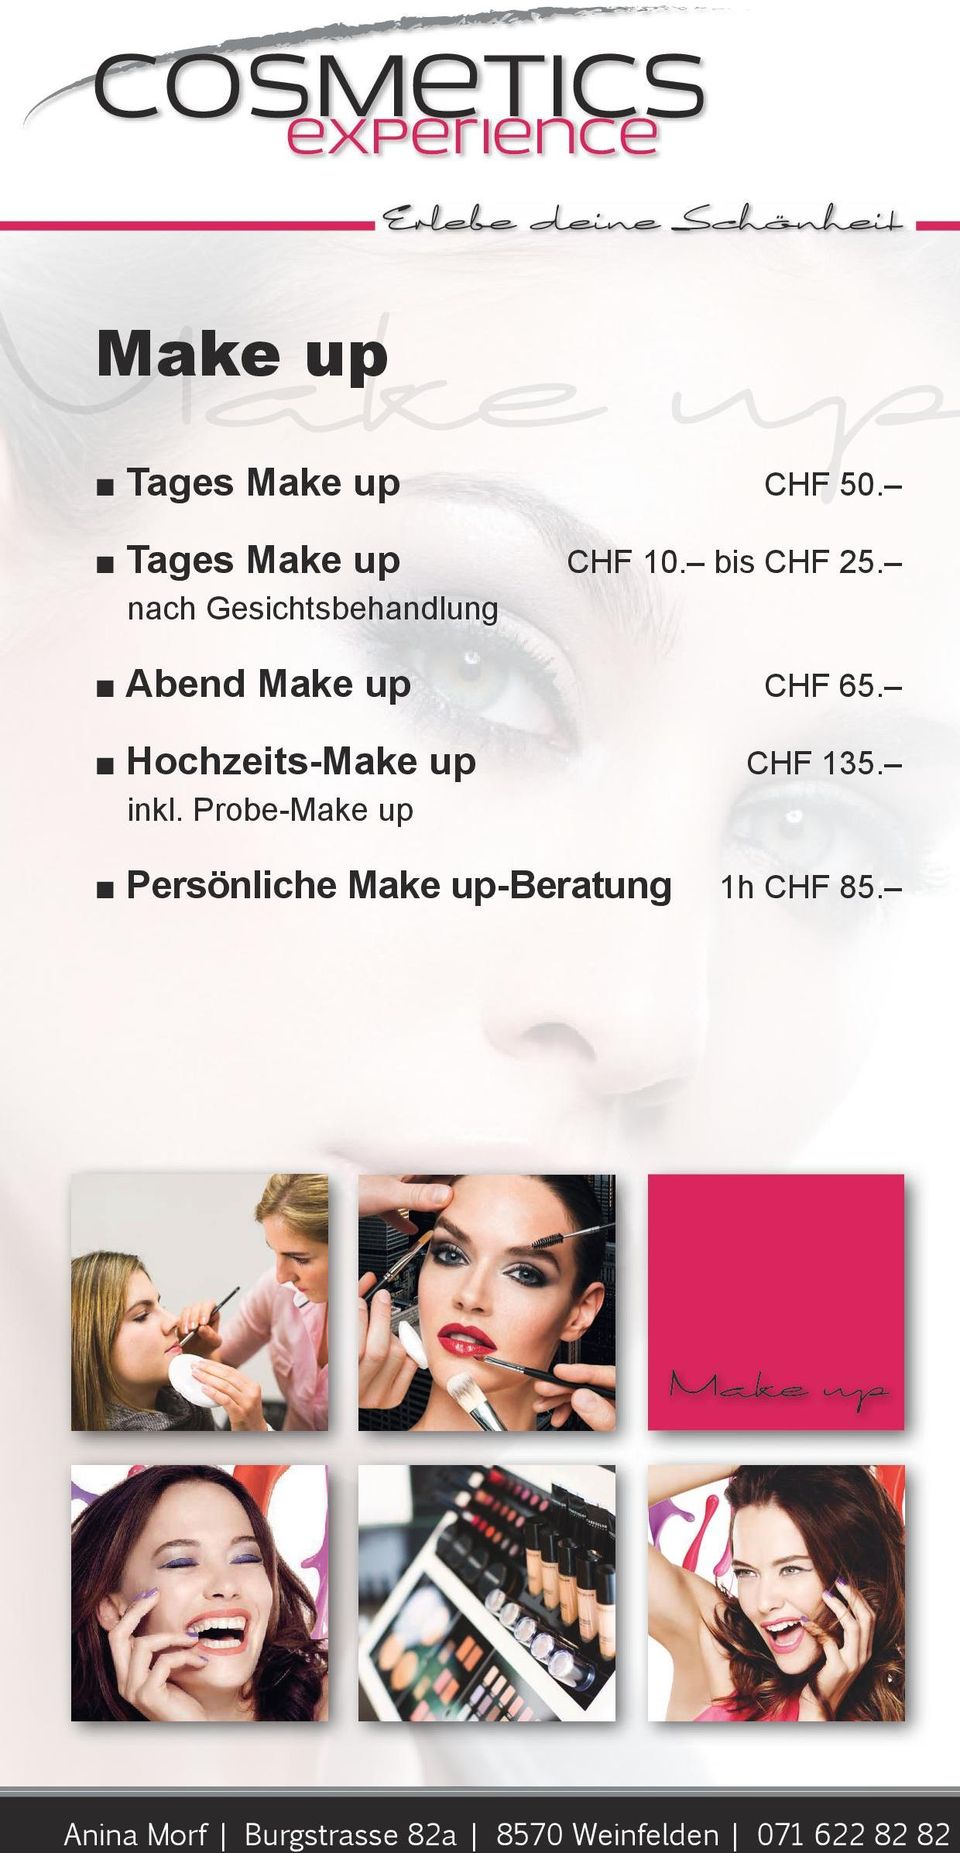 Hochzeits-Make up CHF 135. inkl.